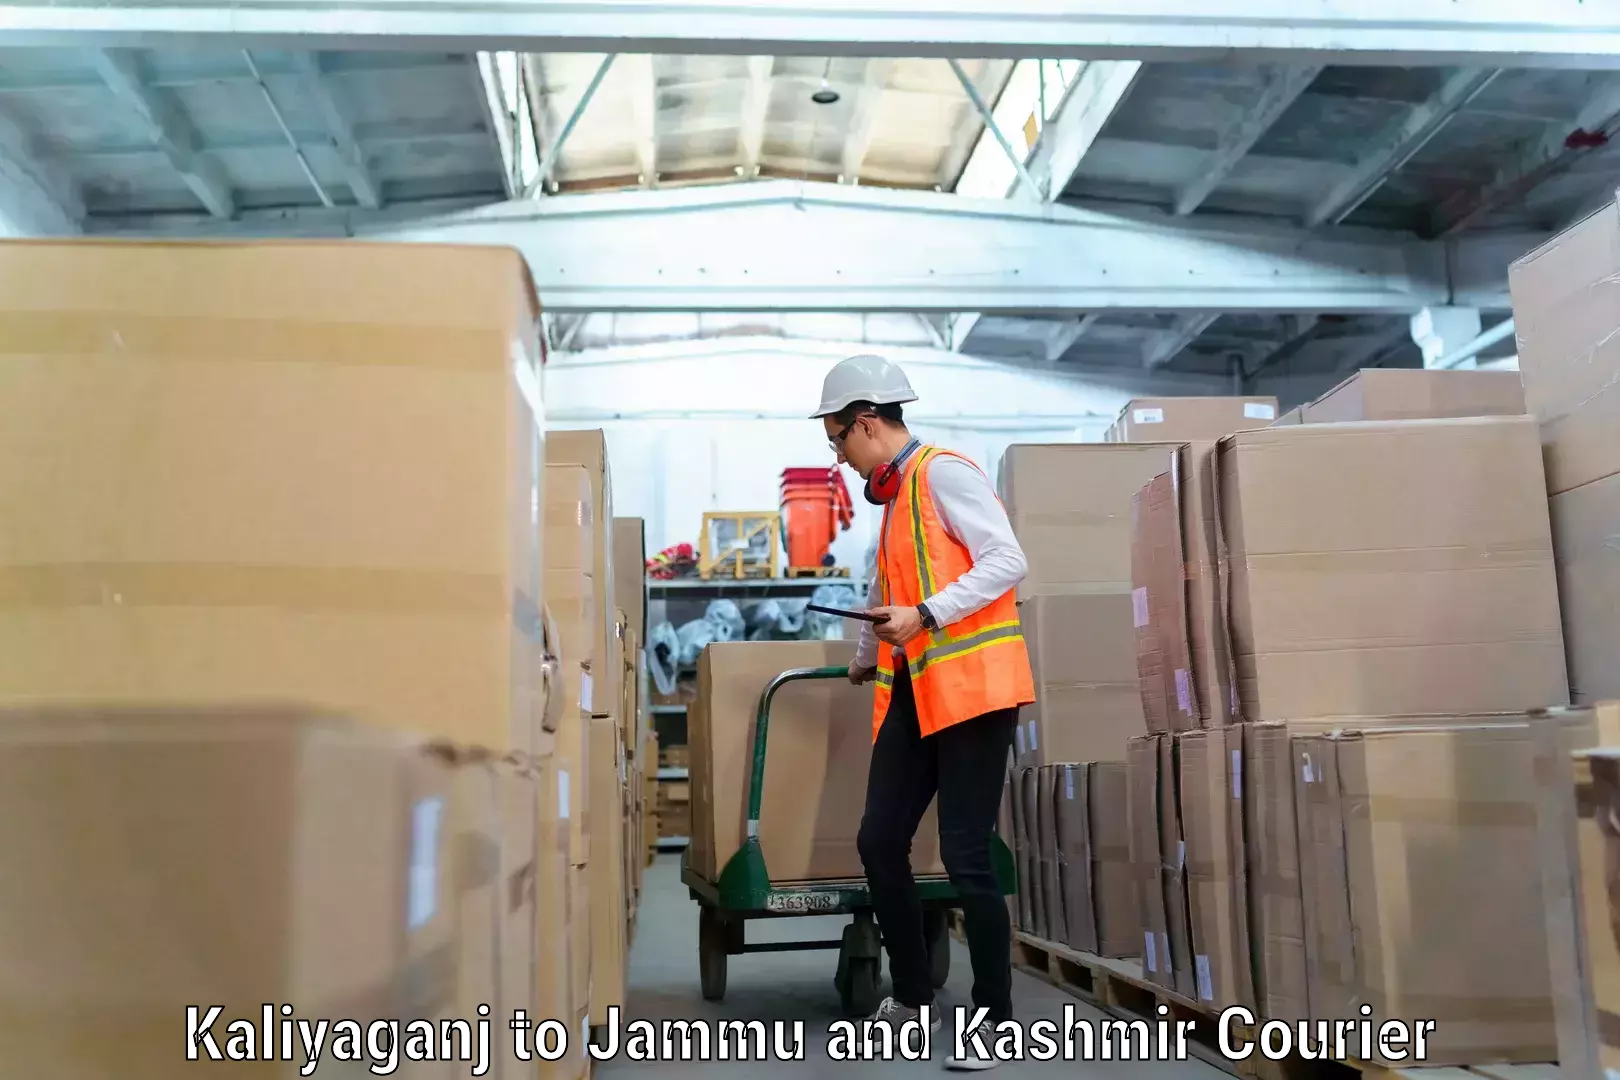 Professional packing services Kaliyaganj to Jammu and Kashmir